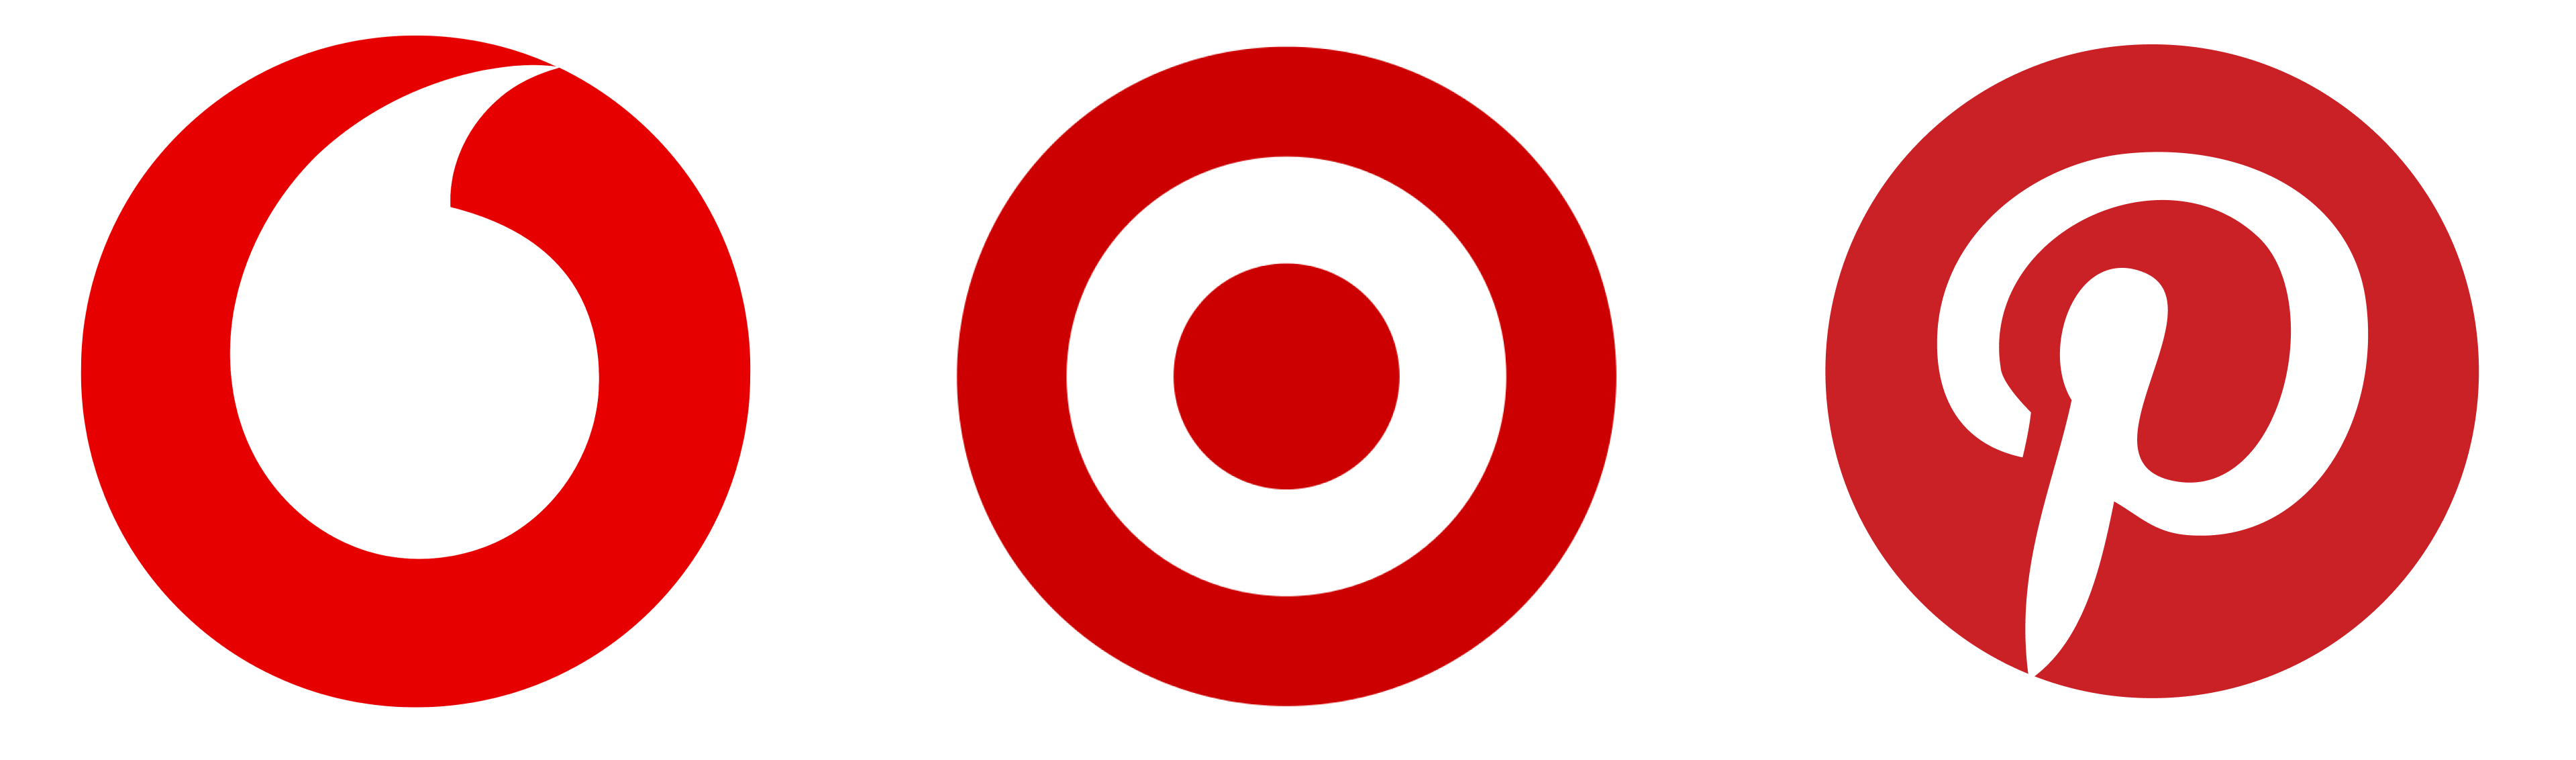 Логотип Vodafone, Pinterest и Target 